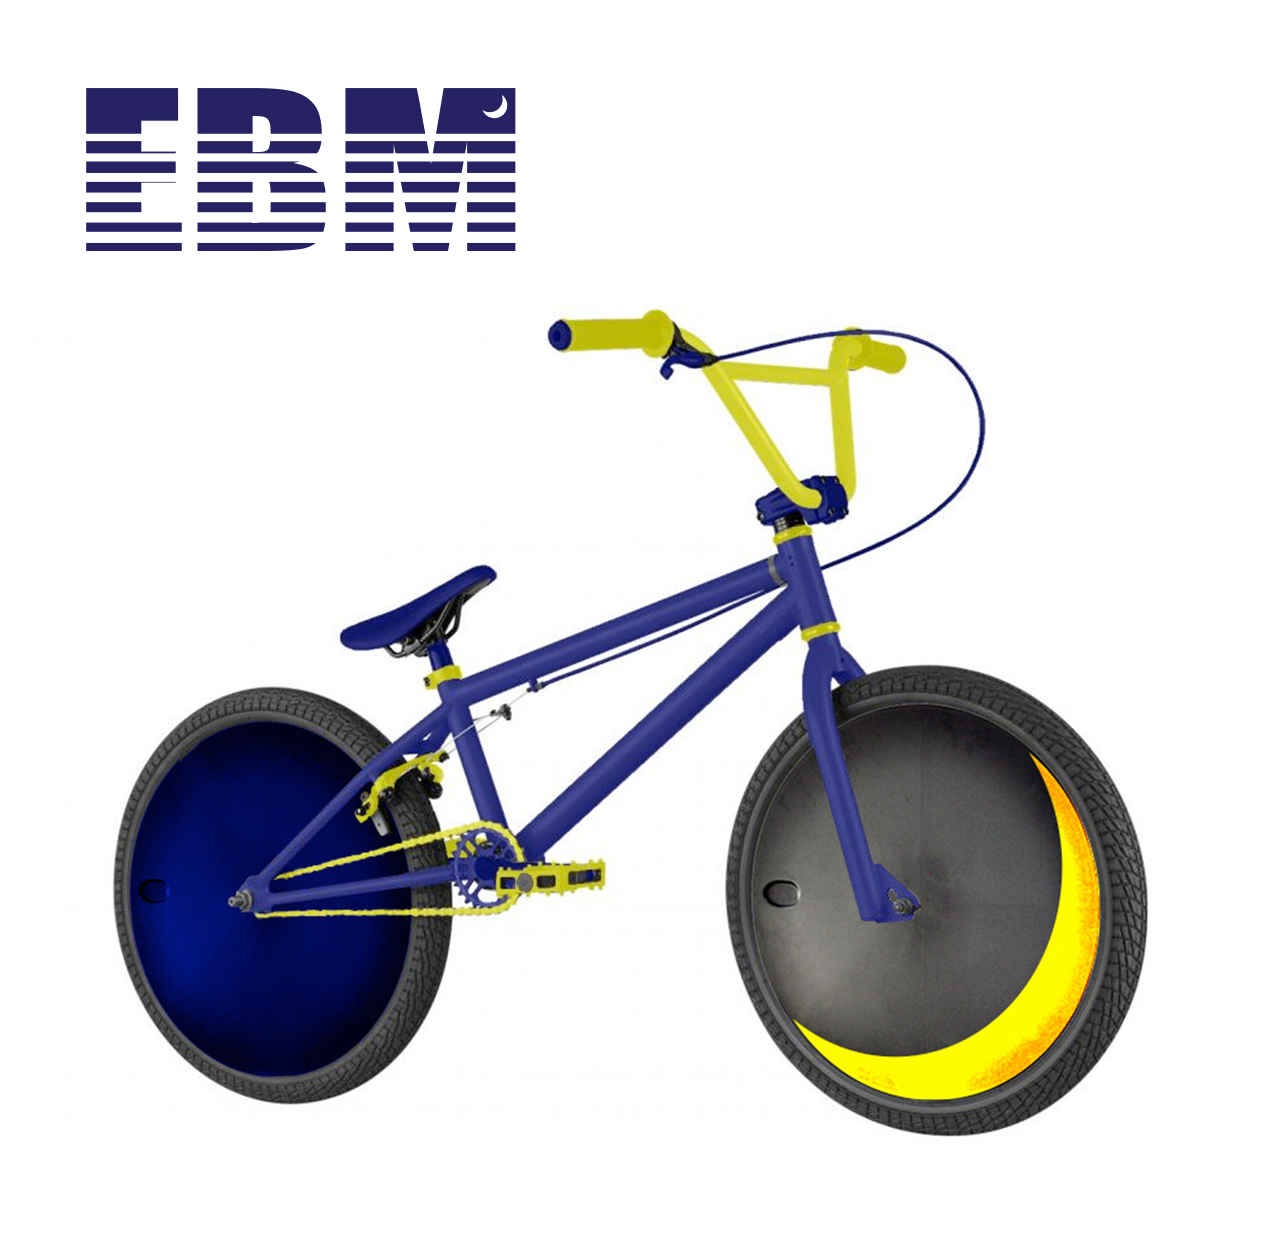 BMX Bike Design